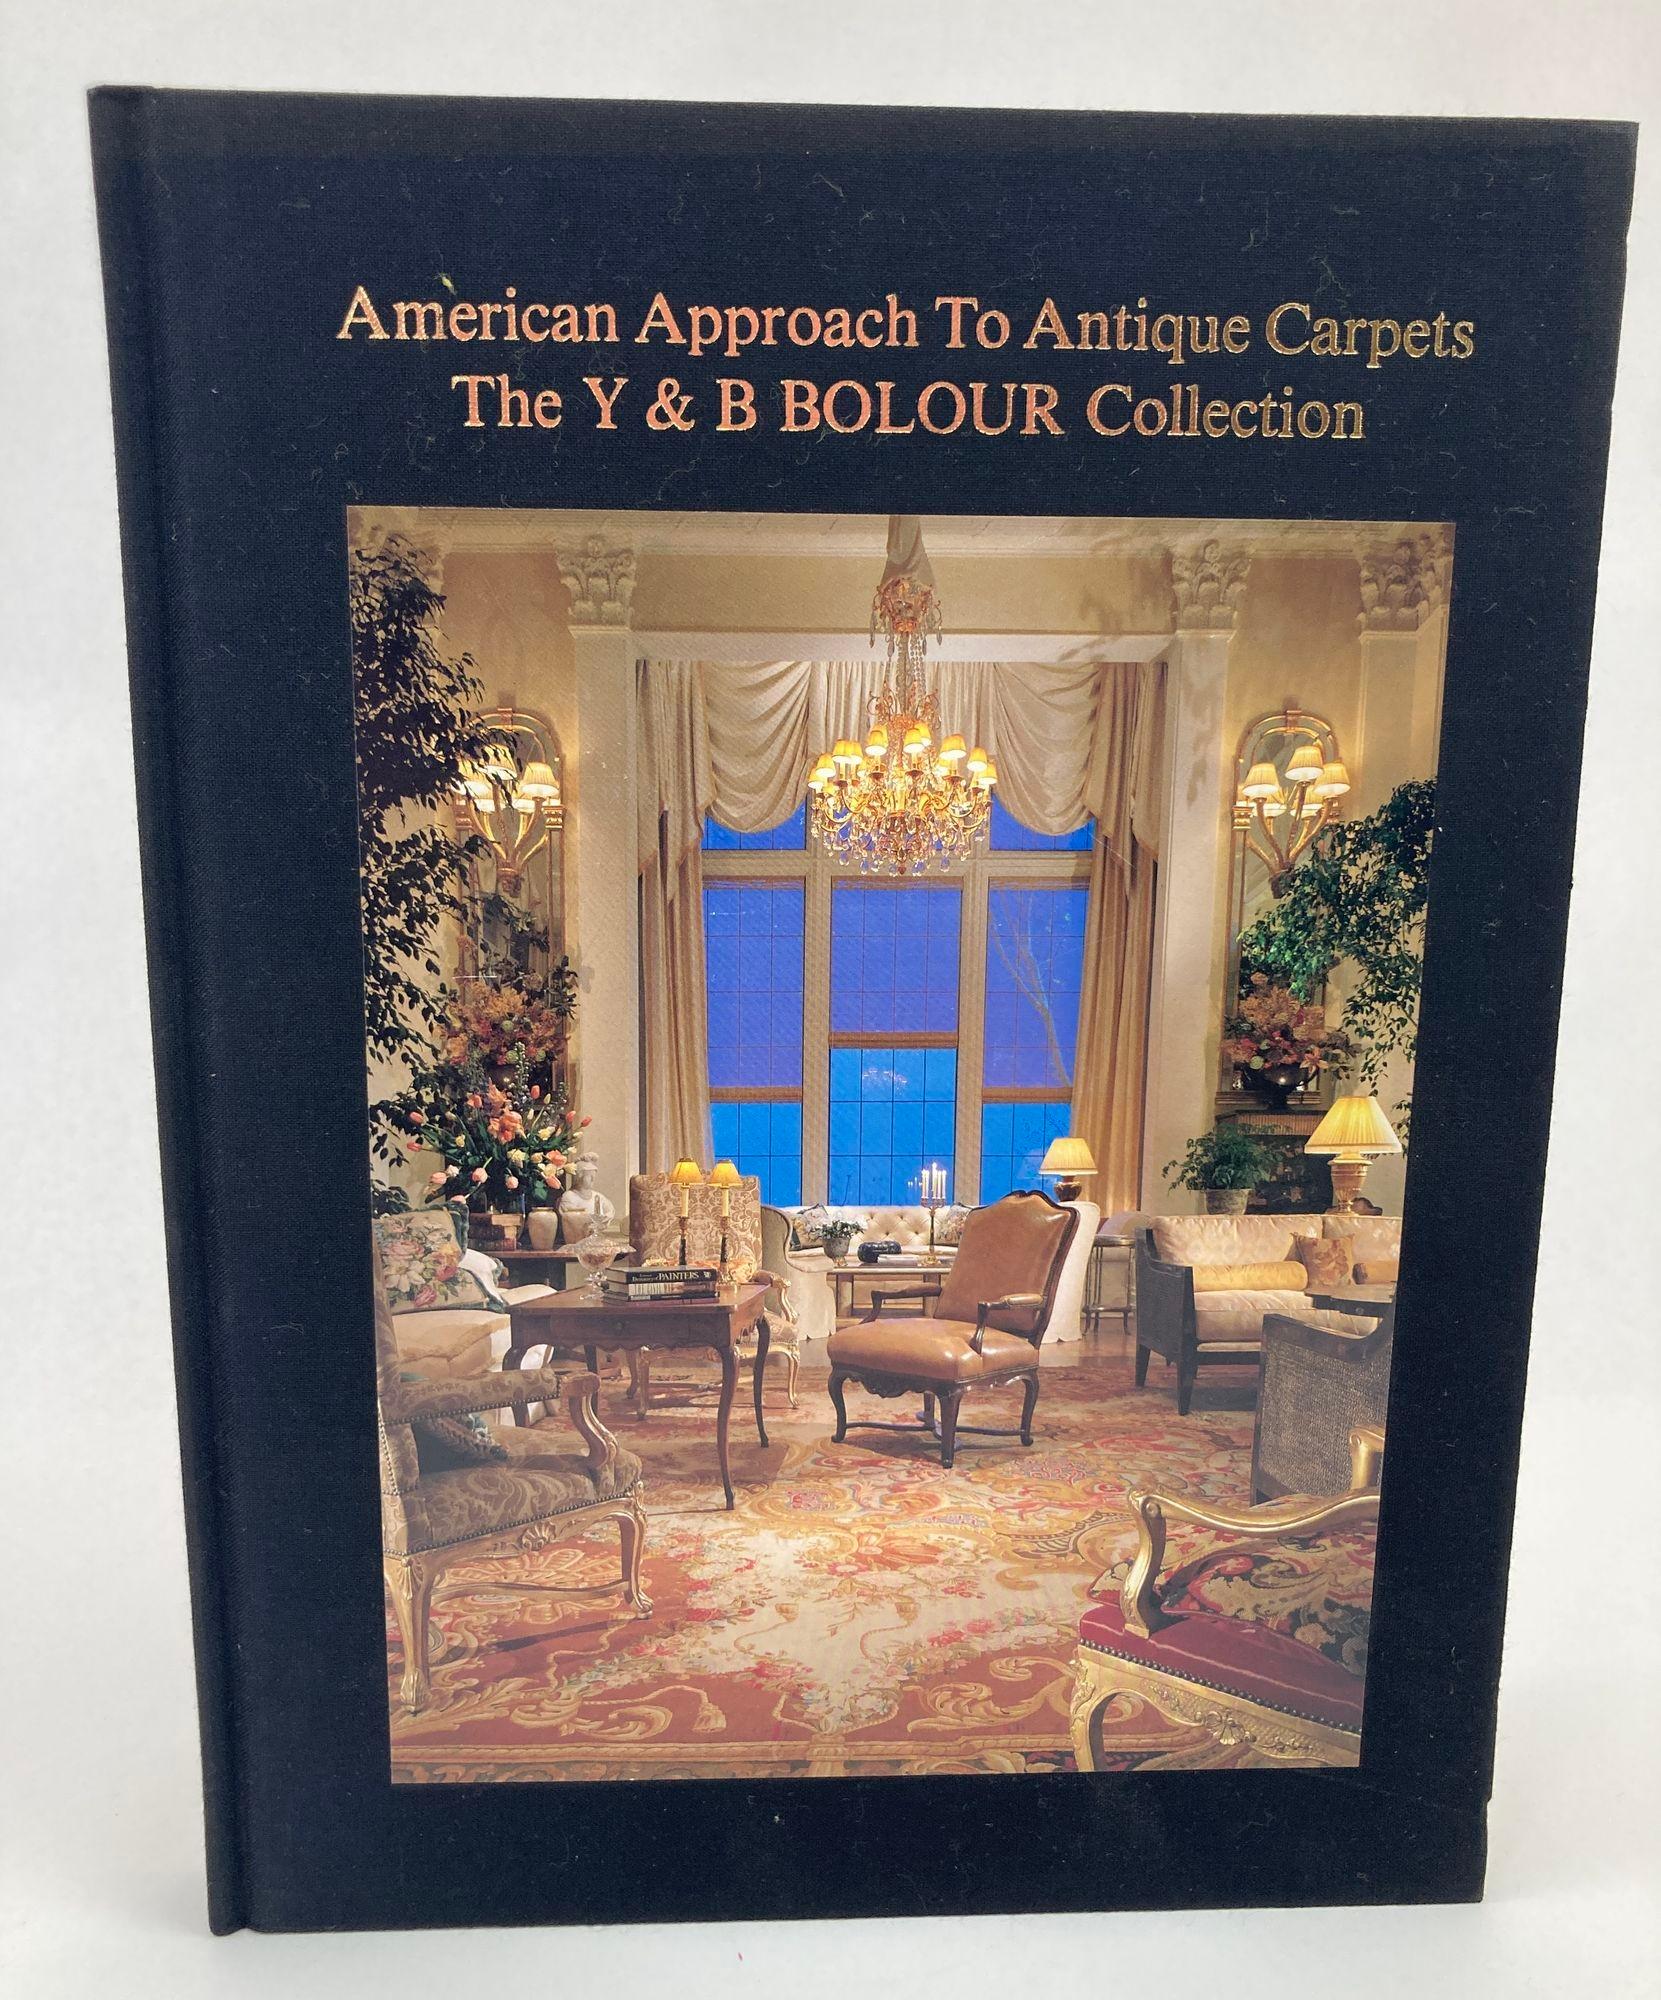 American Approach to Antique Carpets the Y & B Bolour Collection Los Angeles California USA.
Première édition ; 1992.
Exemplaire clair et propre.
